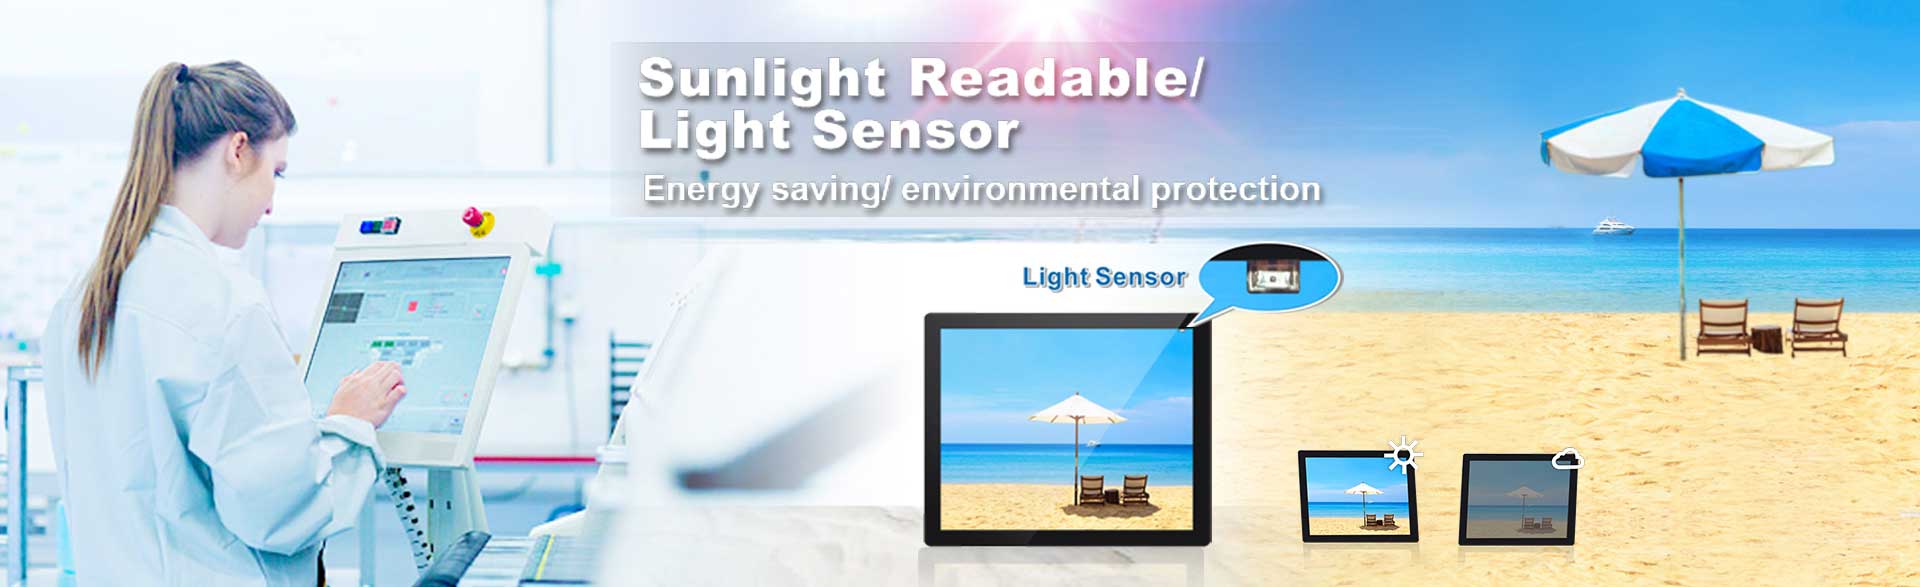 日光読み取り可能な高輝度LCDモニタ